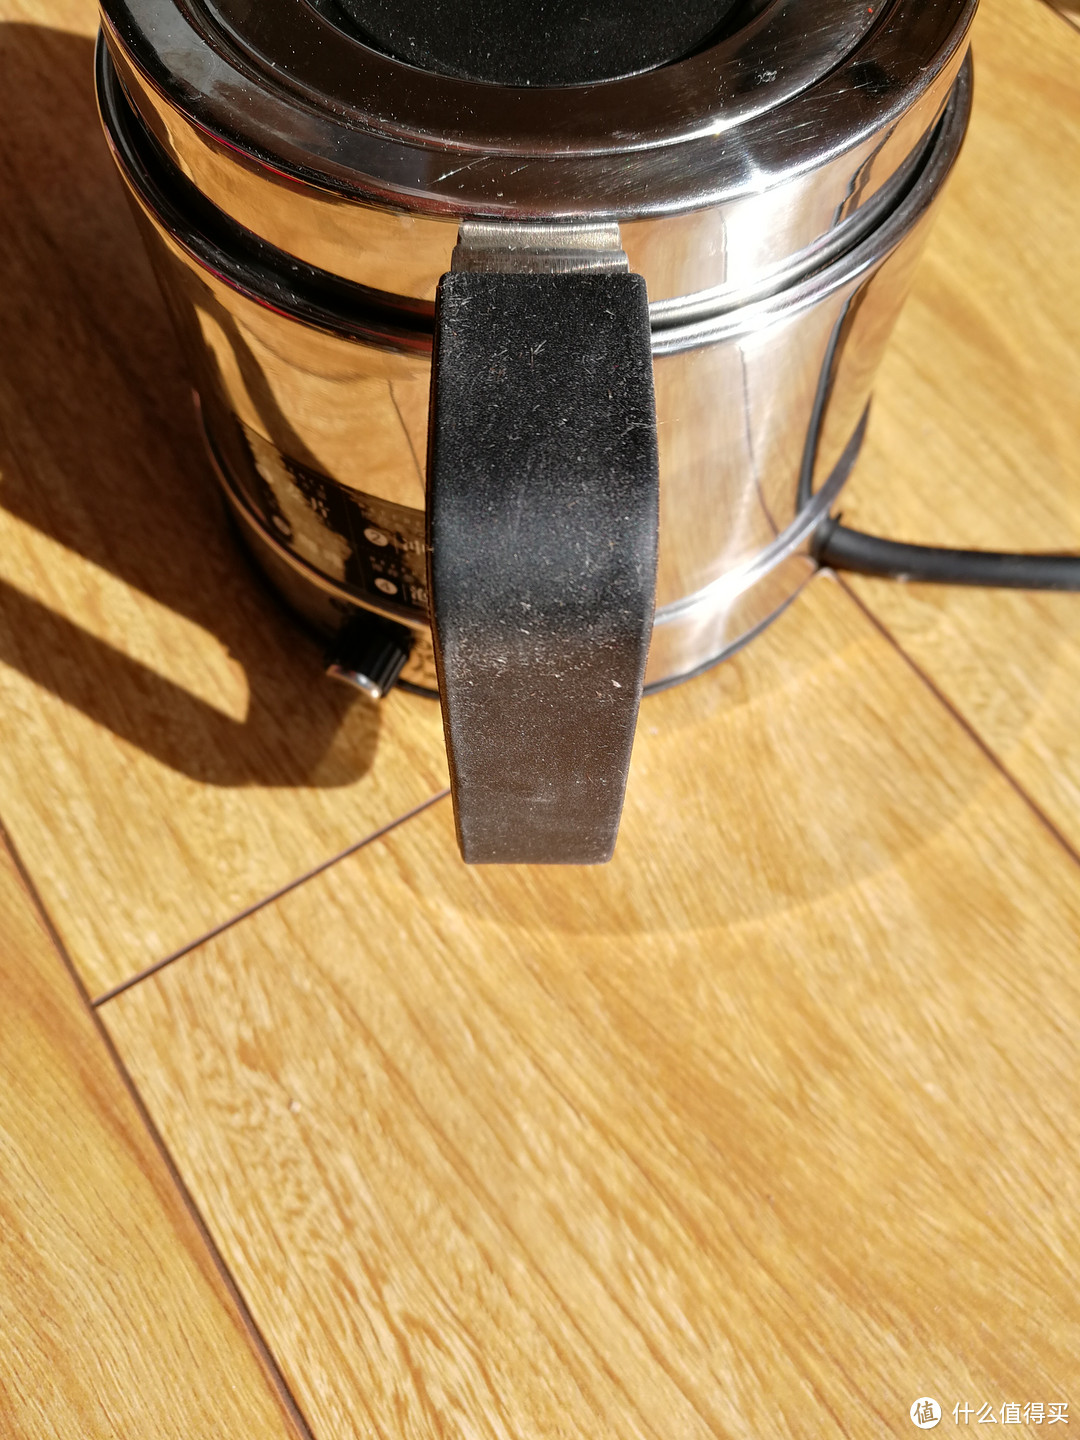 可变形的电热水壶 nathome/北欧欧慕 NSH6510 不锈钢折叠电热水壶